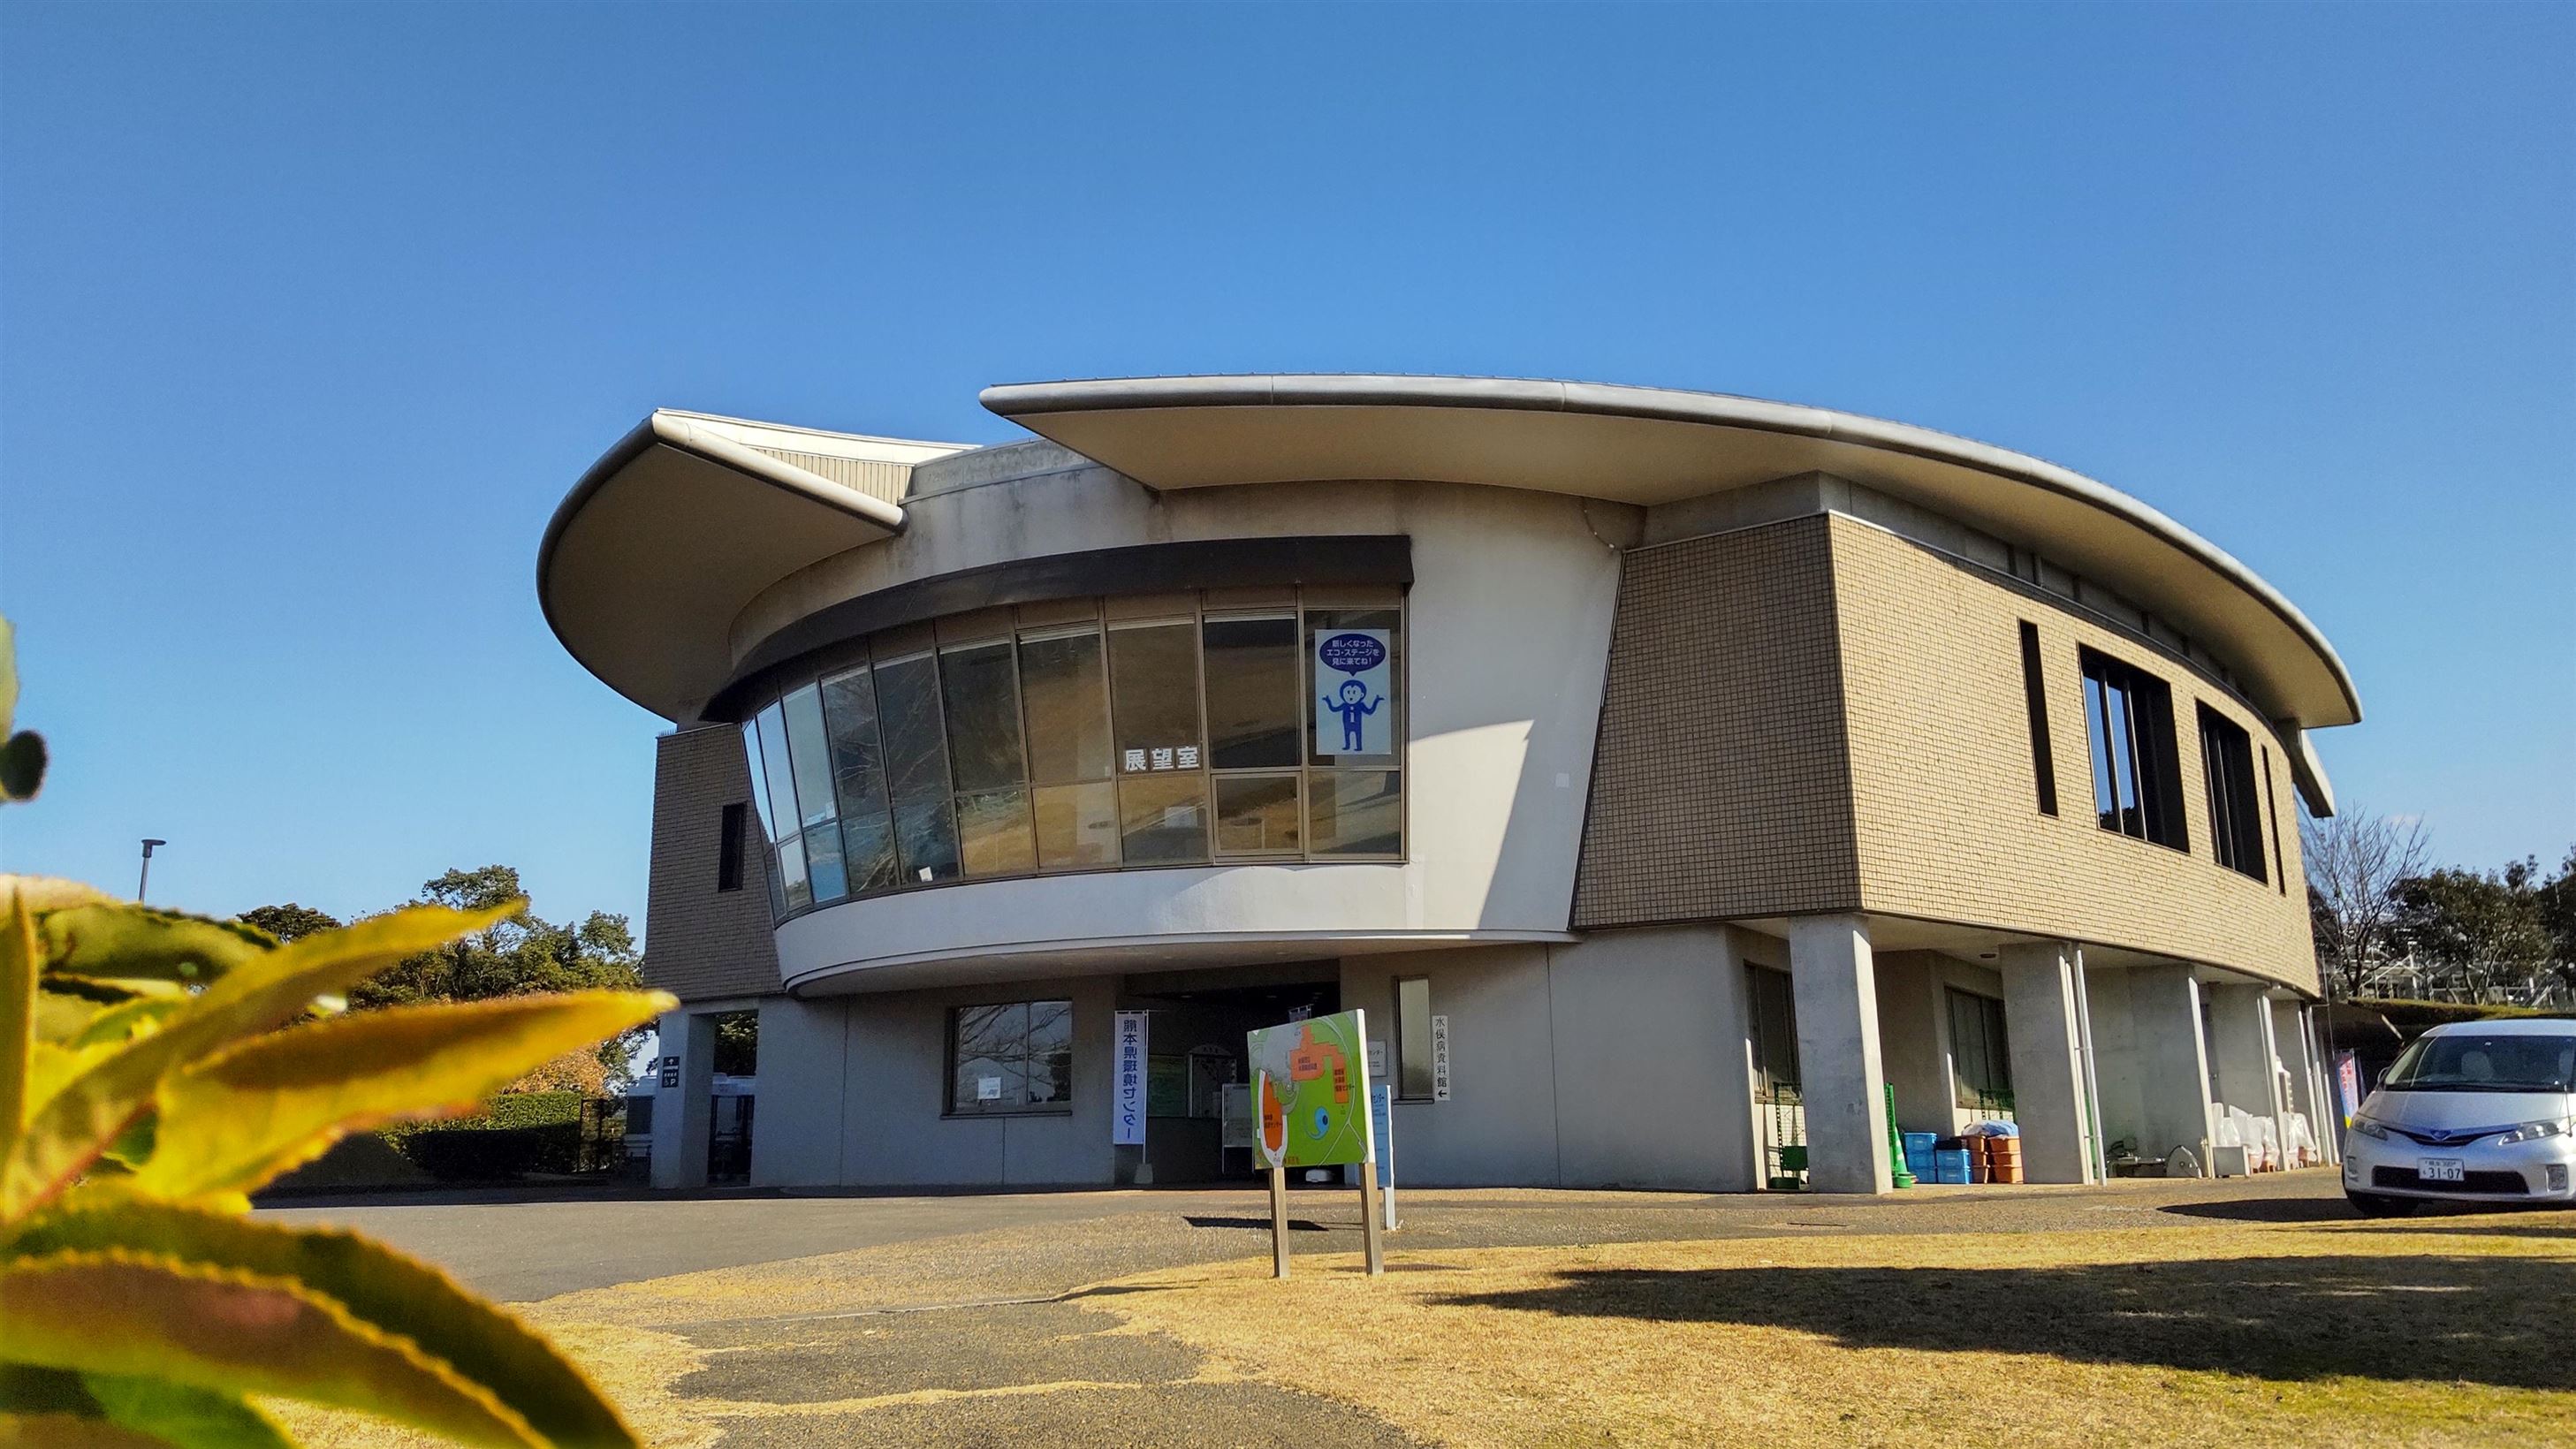 熊本県環境センター